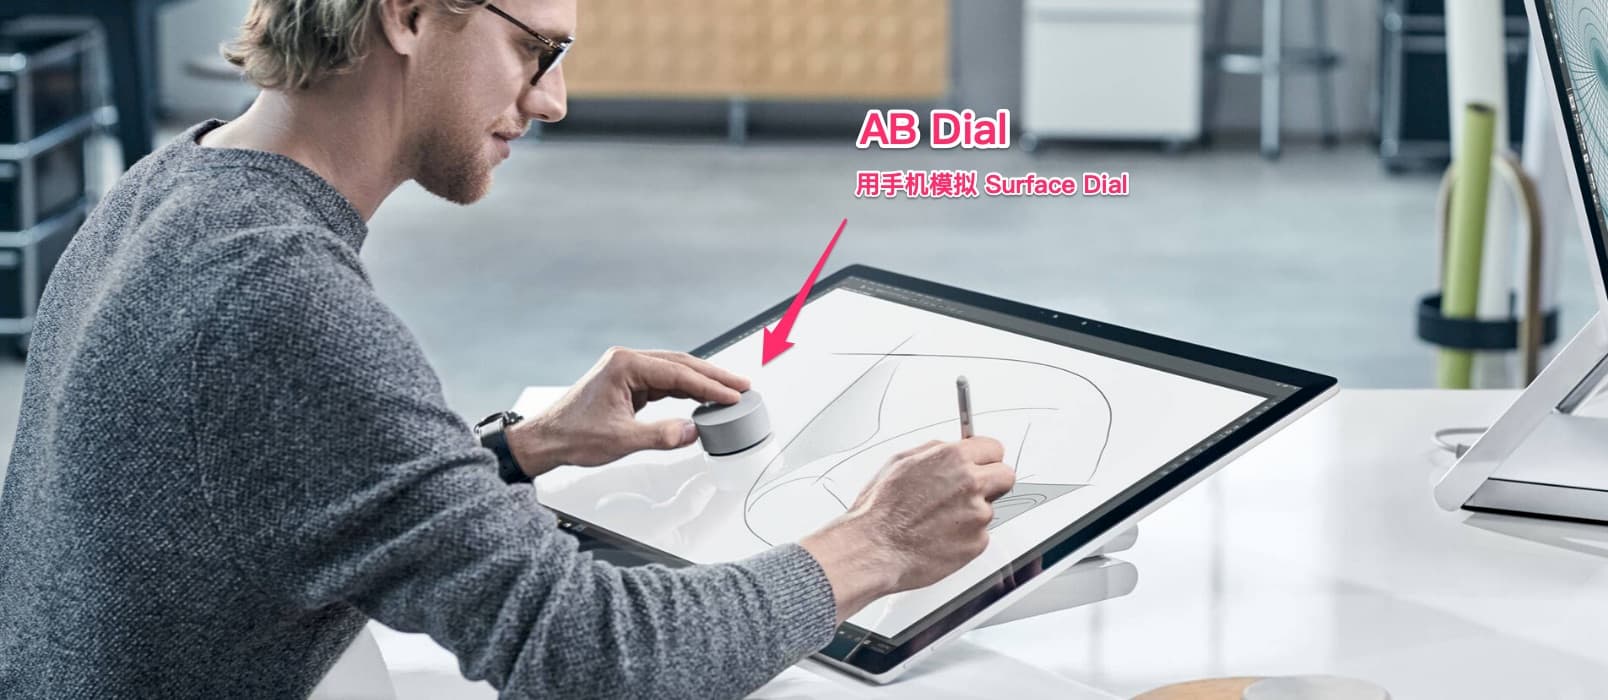 99美金的 Surface Dial，只需一个 Android 应用 AB Dial 就搞定了 1